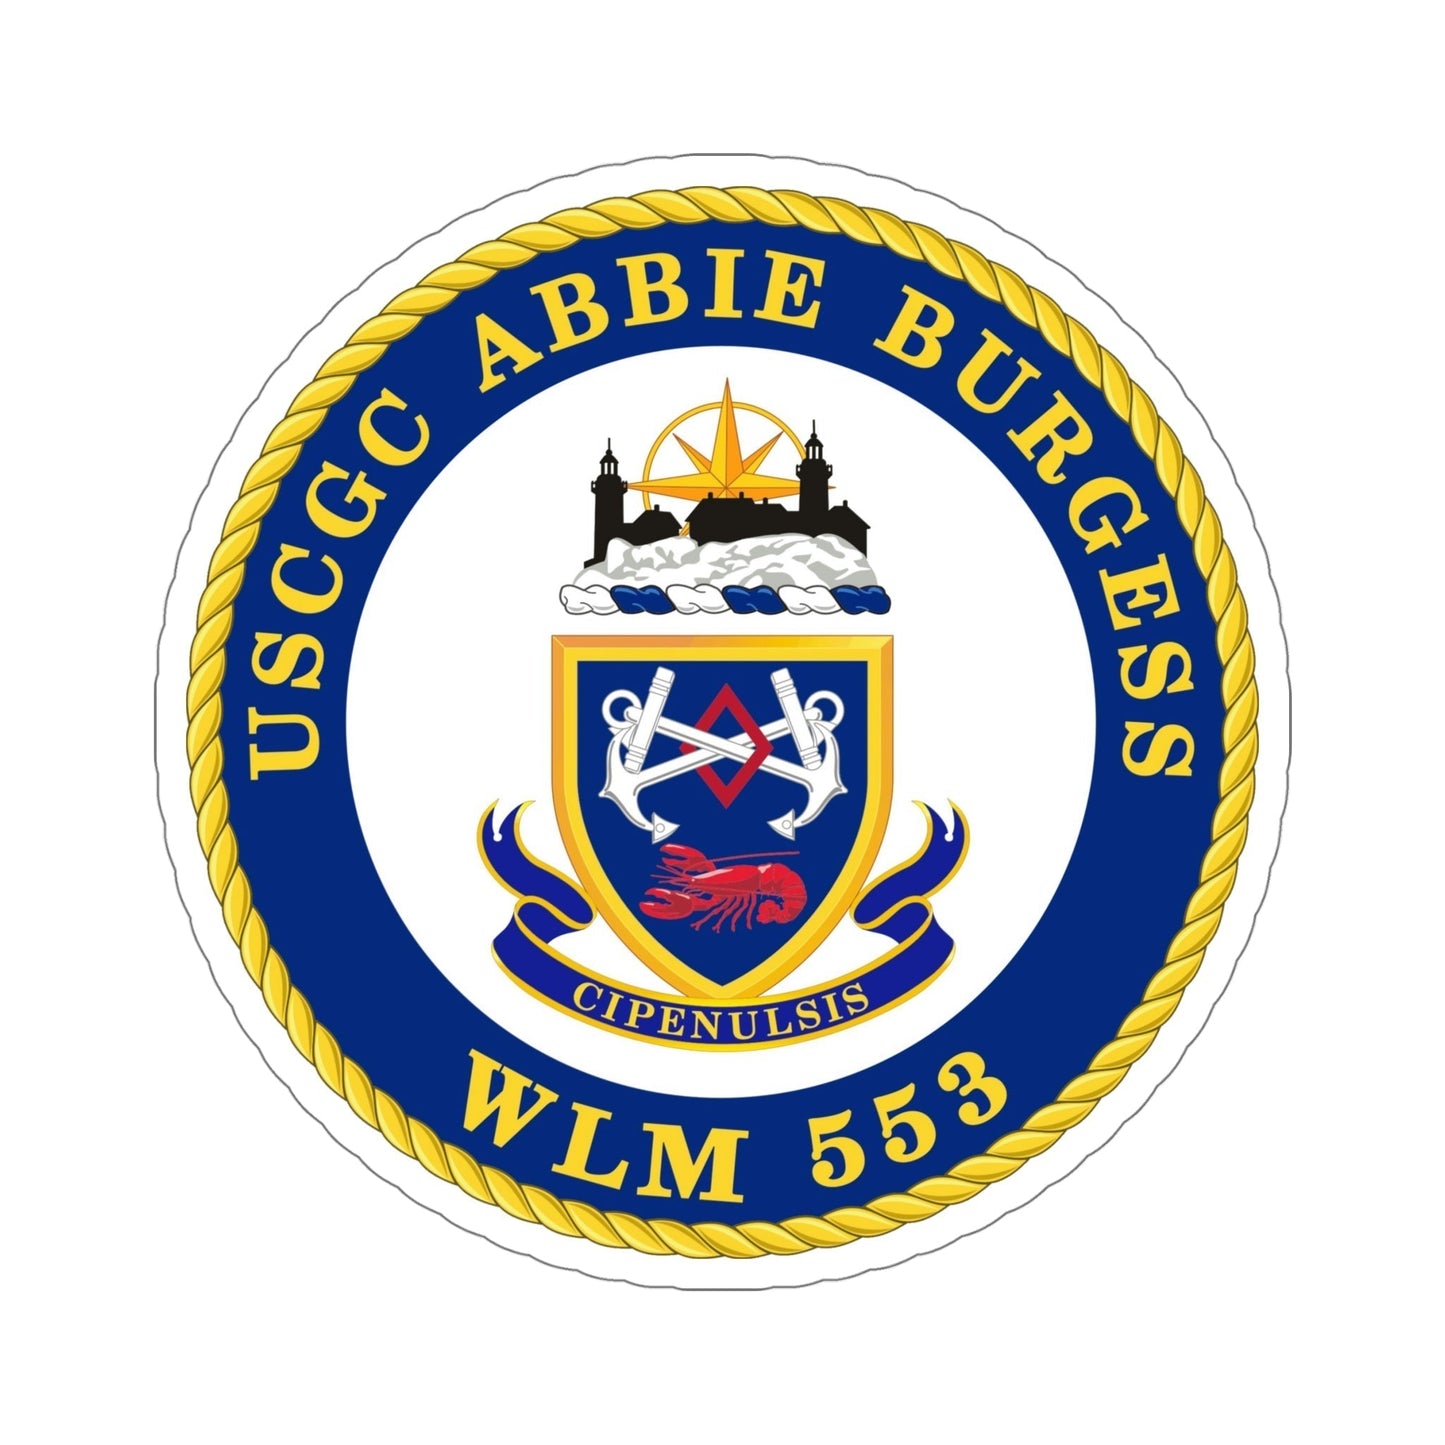 USCGC Abbie Burgess WLM 553 (U.S. Coast Guard) STICKER Vinyl Die-Cut Decal-6 Inch-The Sticker Space